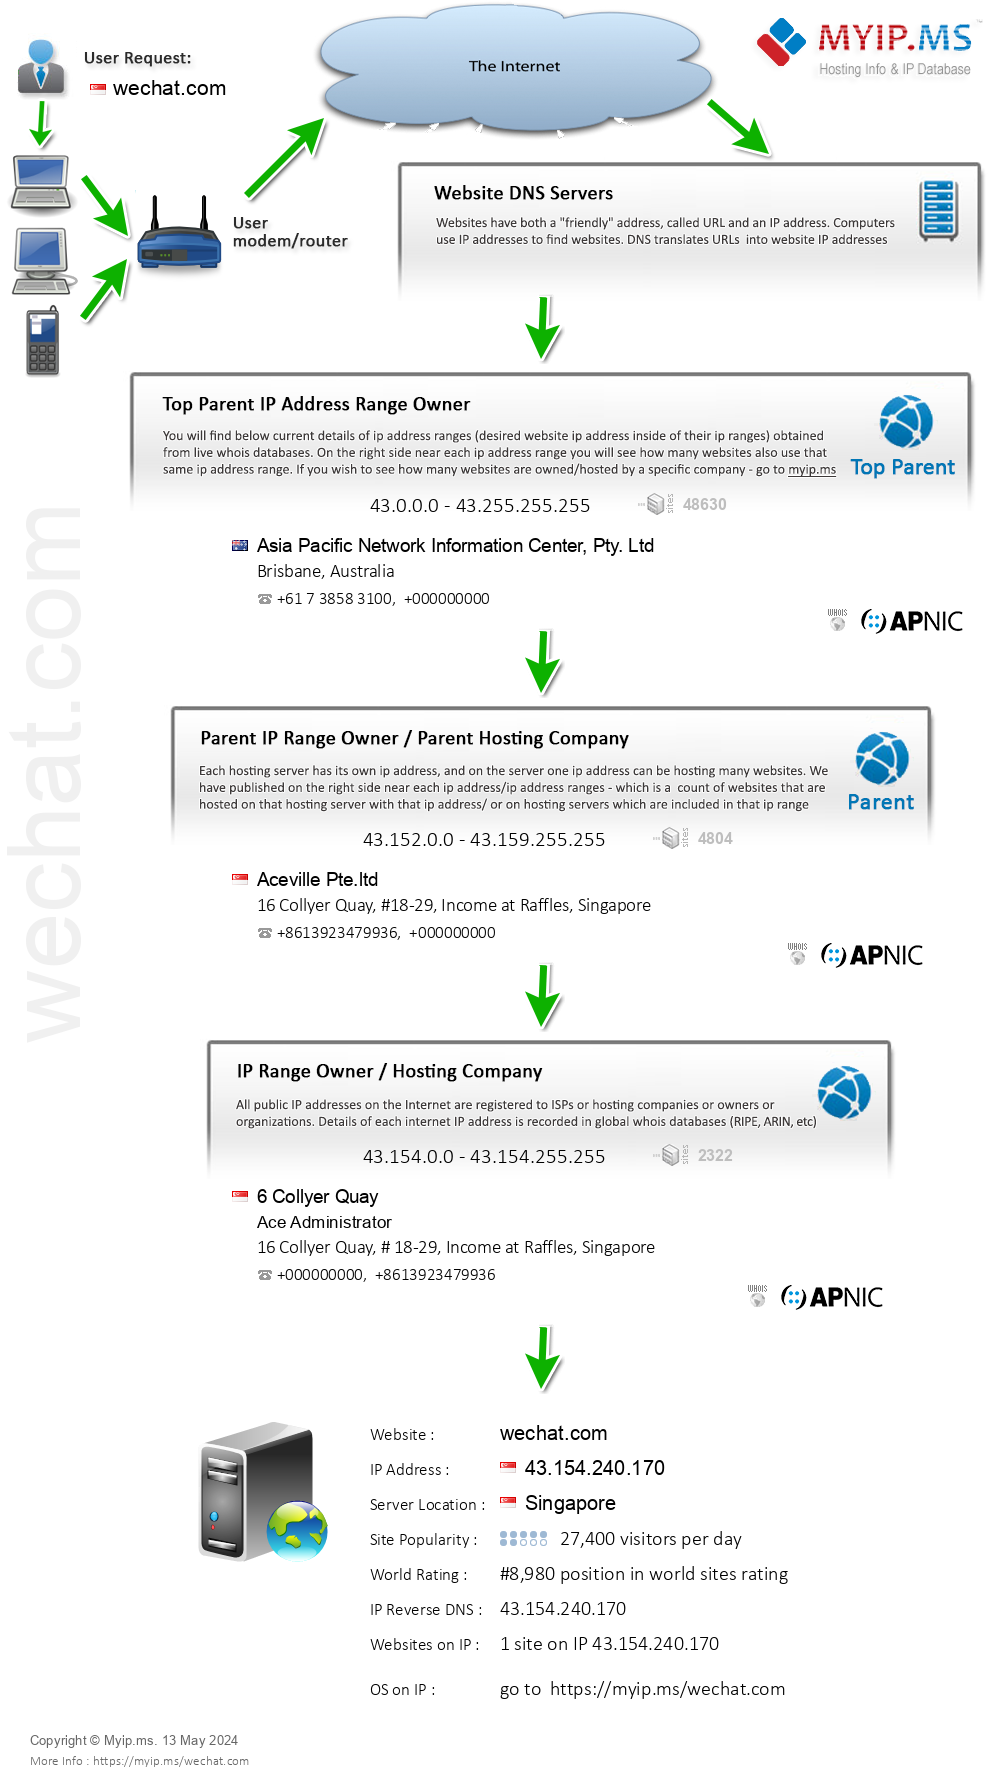 Wechat.com - Website Hosting Visual IP Diagram